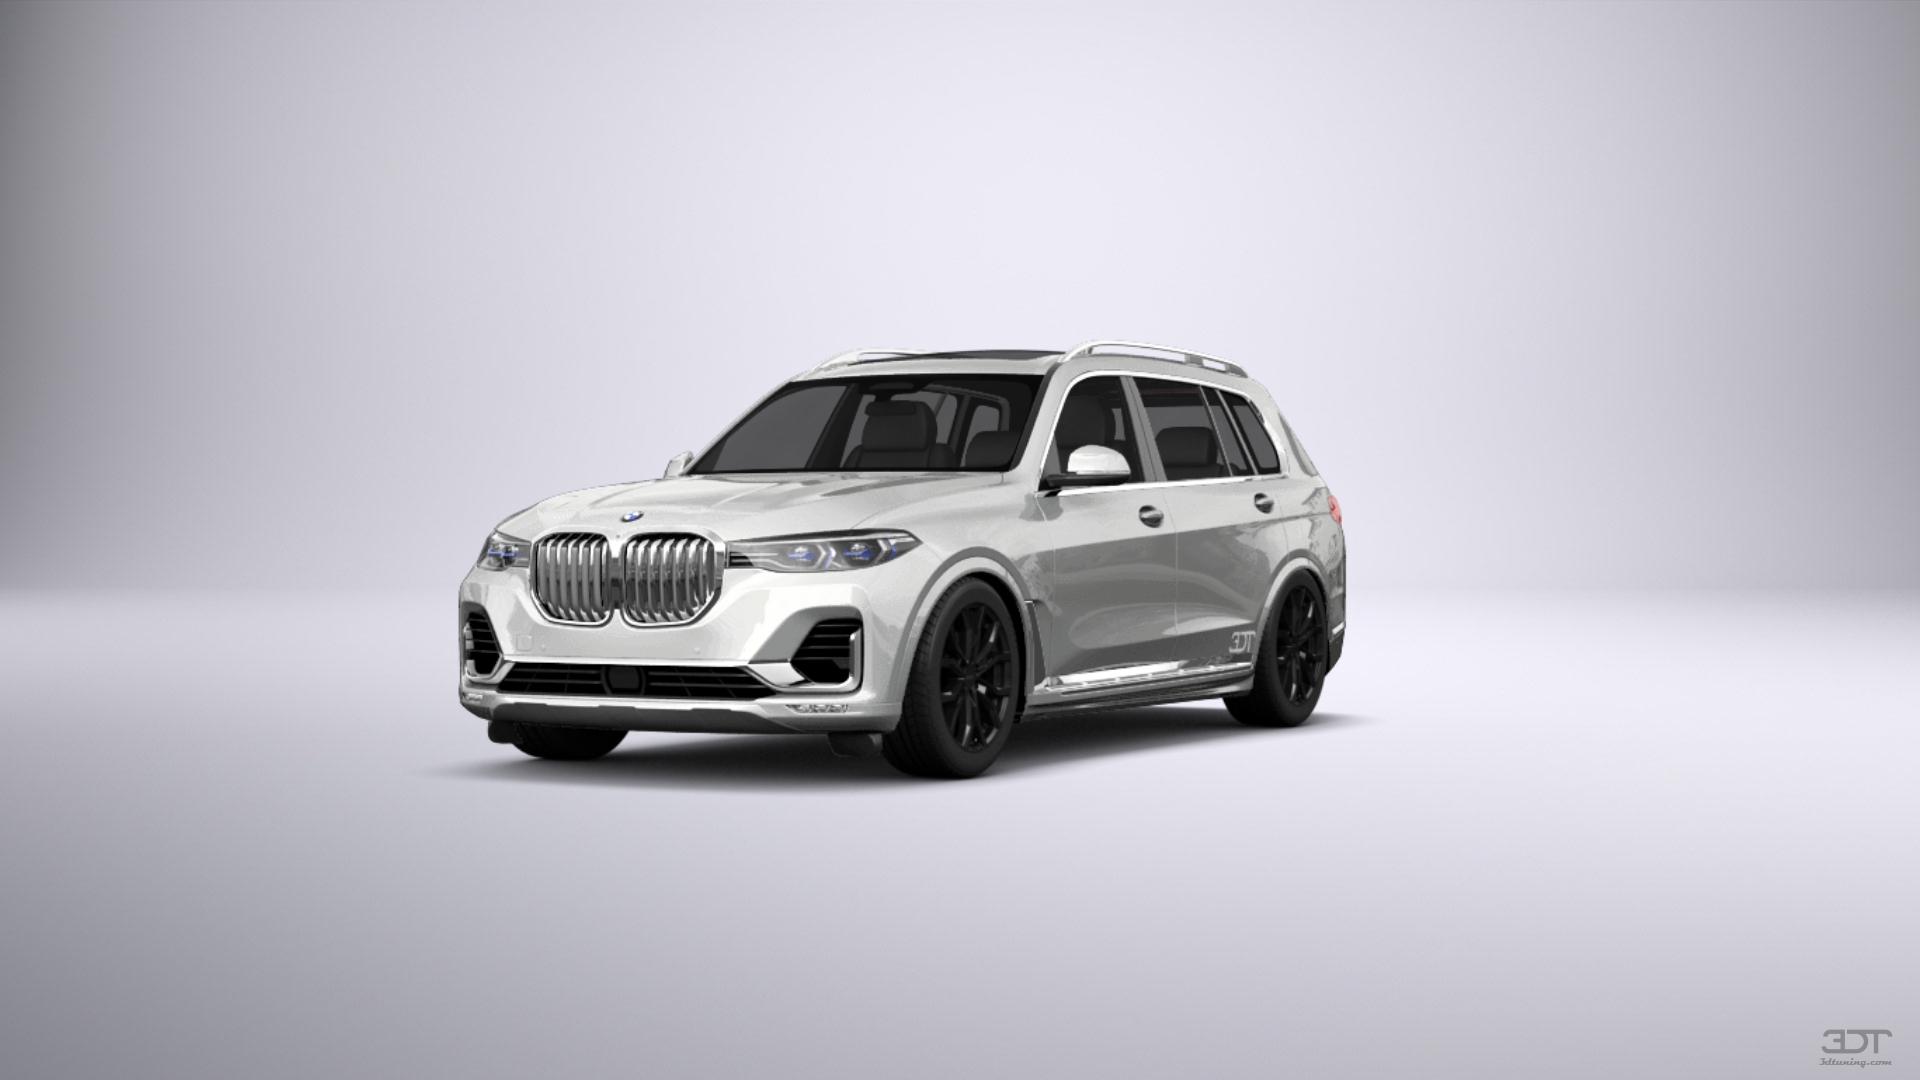 BMW X7 5 Door SUV 2019